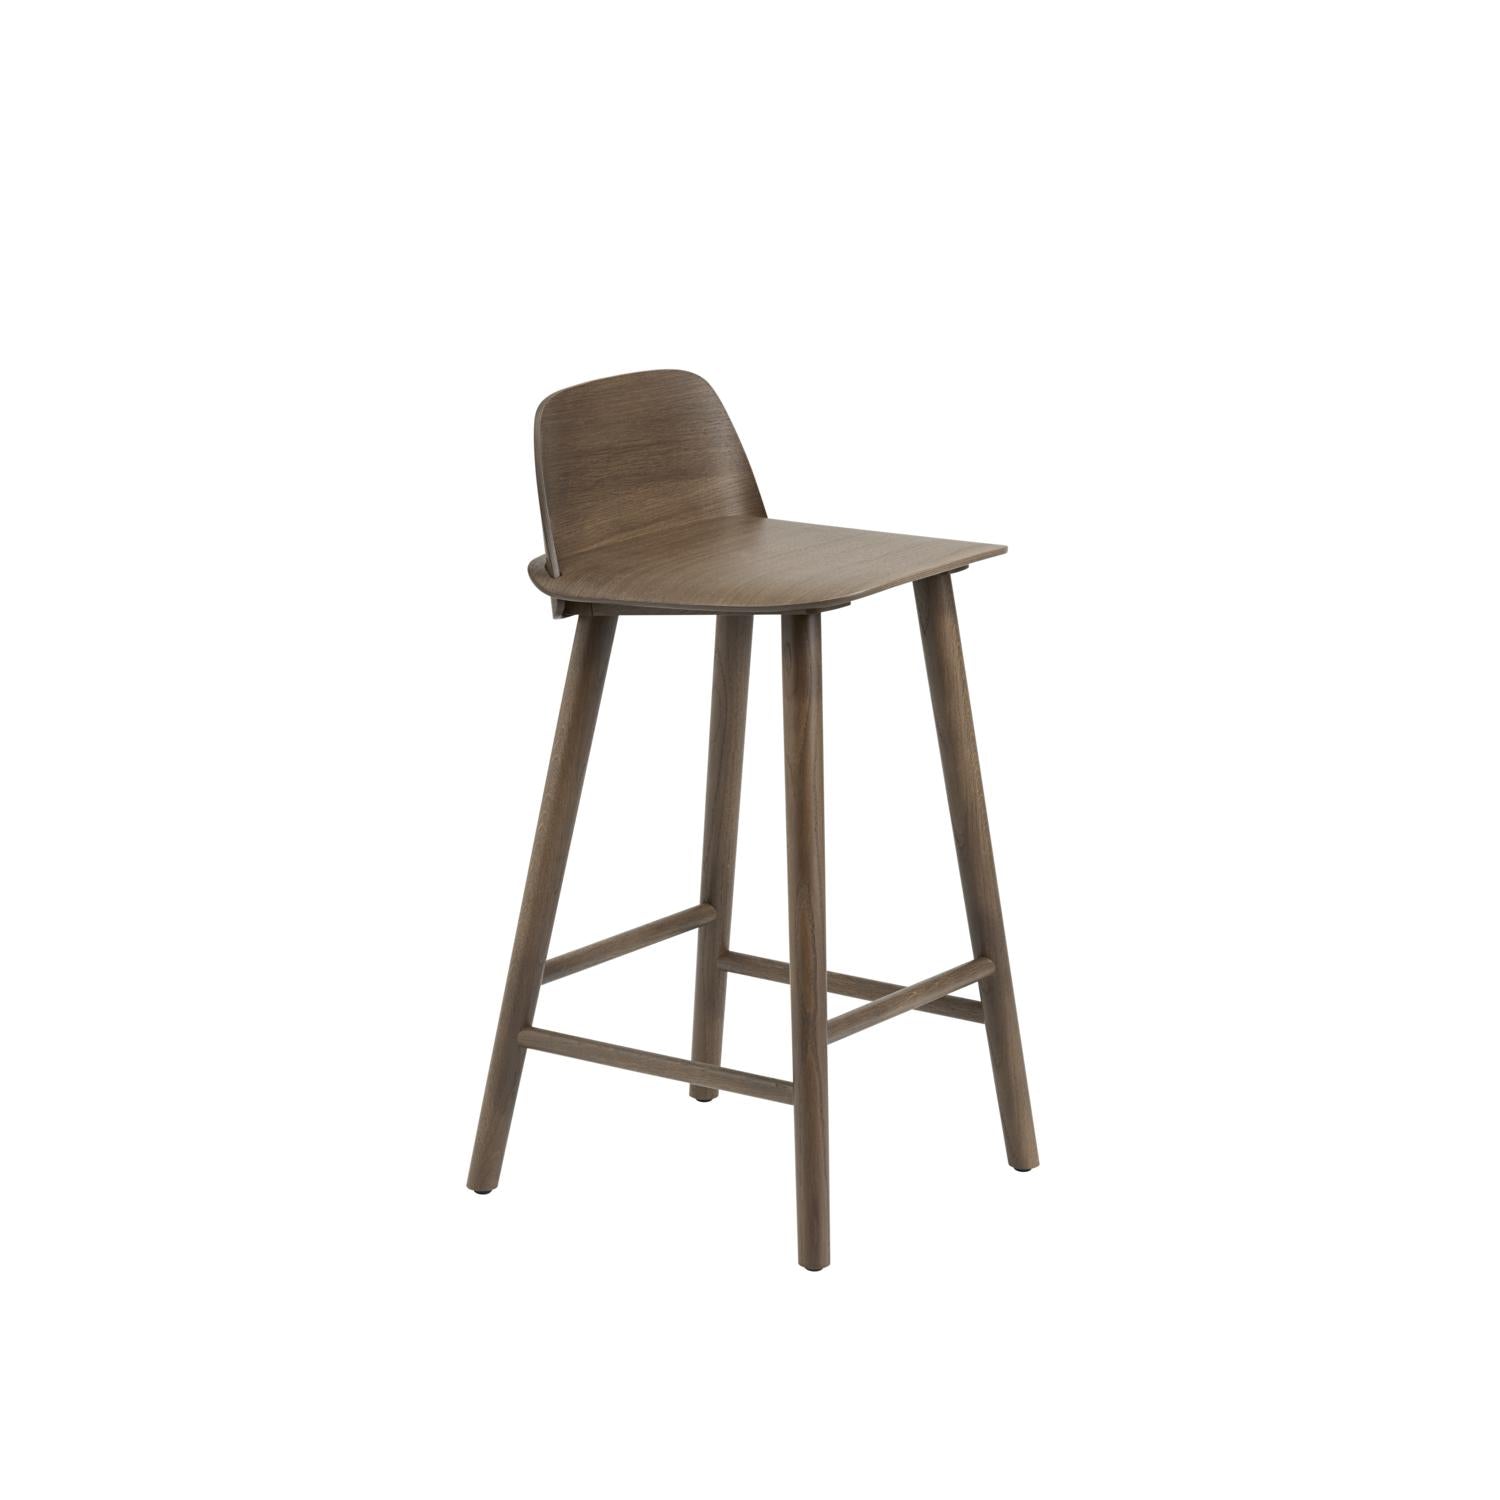 Muuto blbeček pult stolička 65 cm, tmavě hnědá obarvená